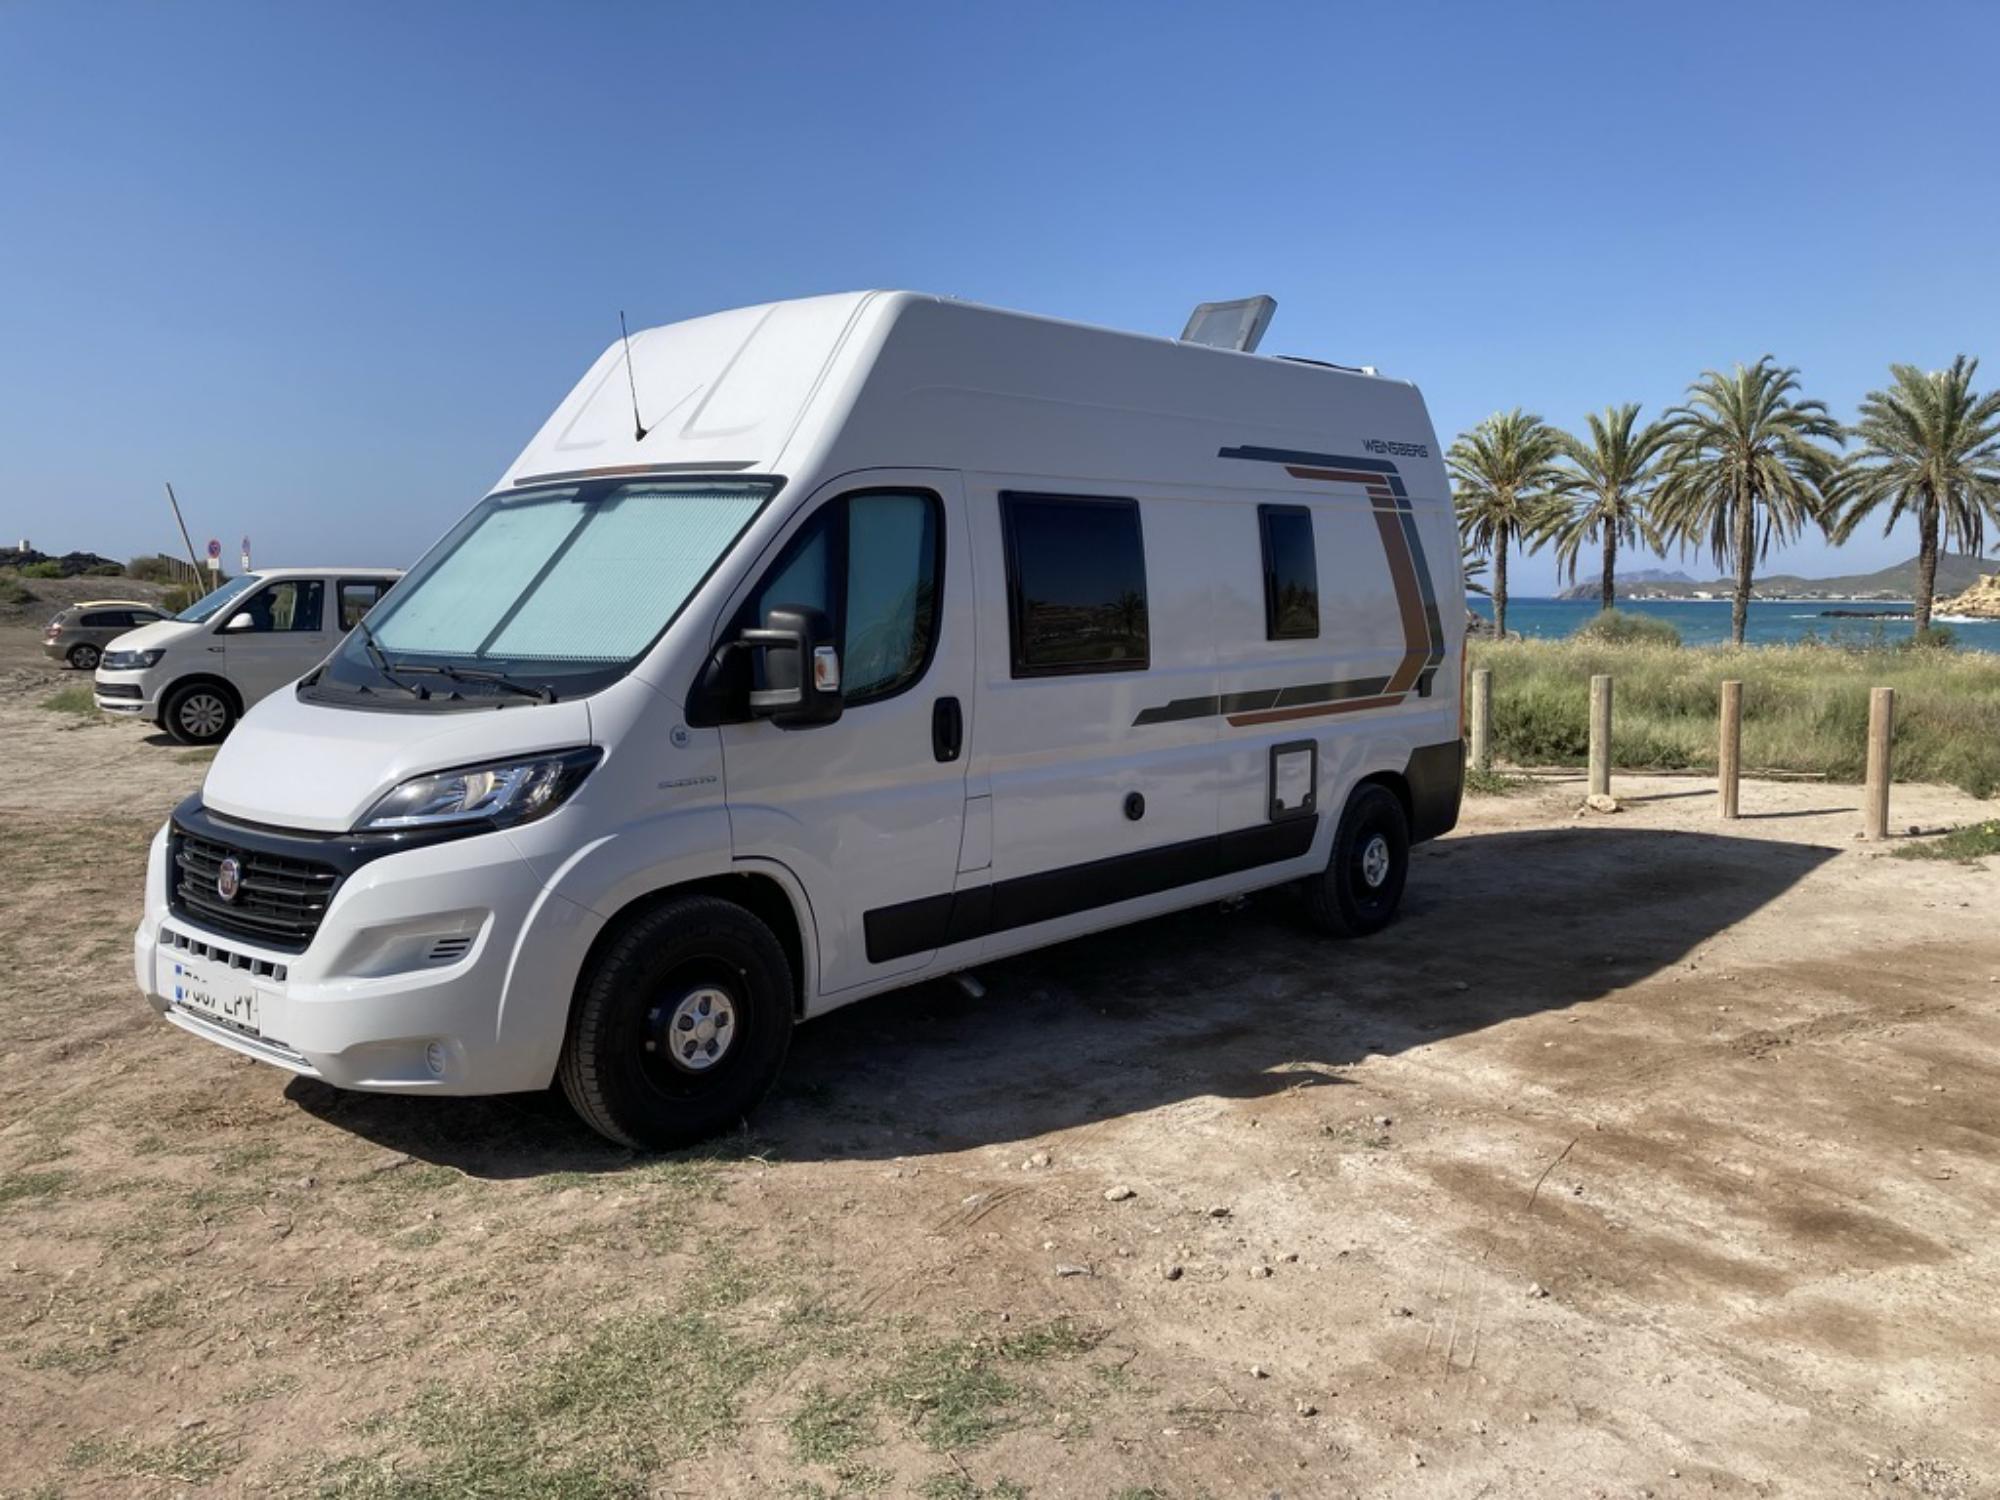 Campervan Hire and Motorhome Rental in East Spain – Hipcamp Campervans